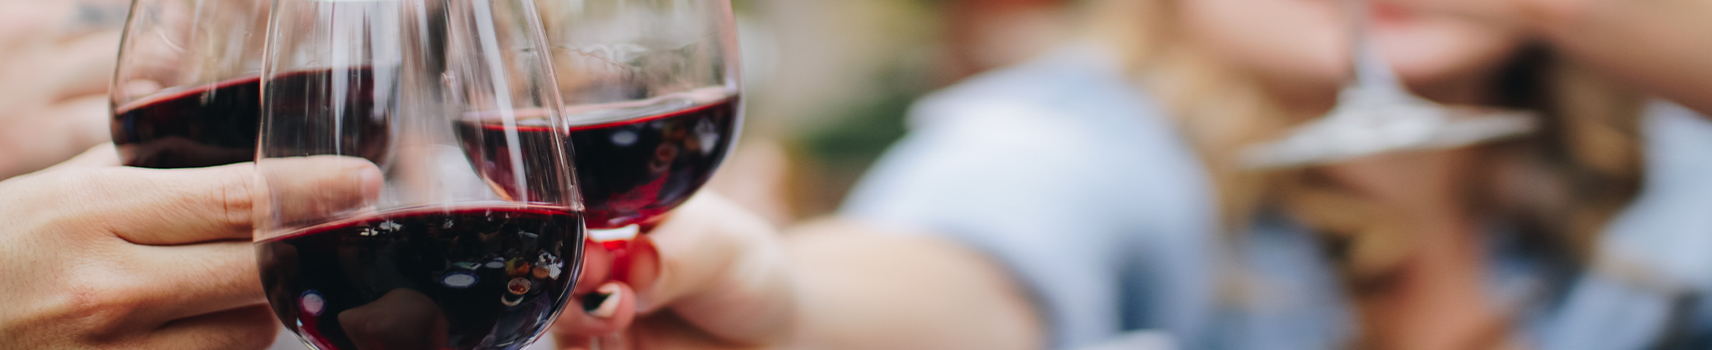 Vinos tintos Campo de Borja | Compra online vino tinto DOP CAMPO DE BORJA